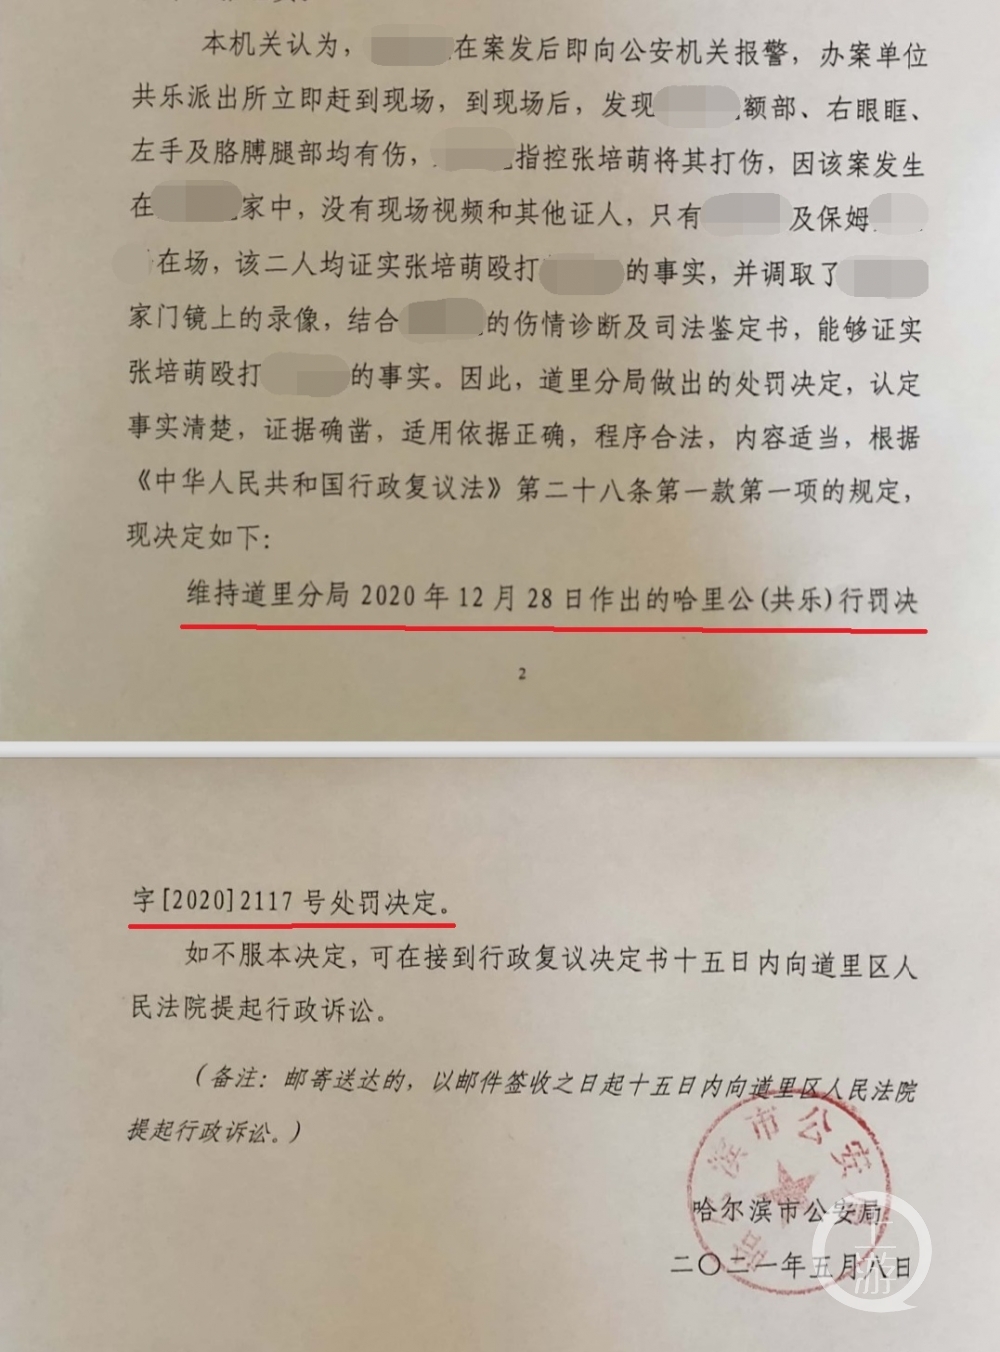 张培萌打岳母被行拘上诉案3_打码划线.jpg